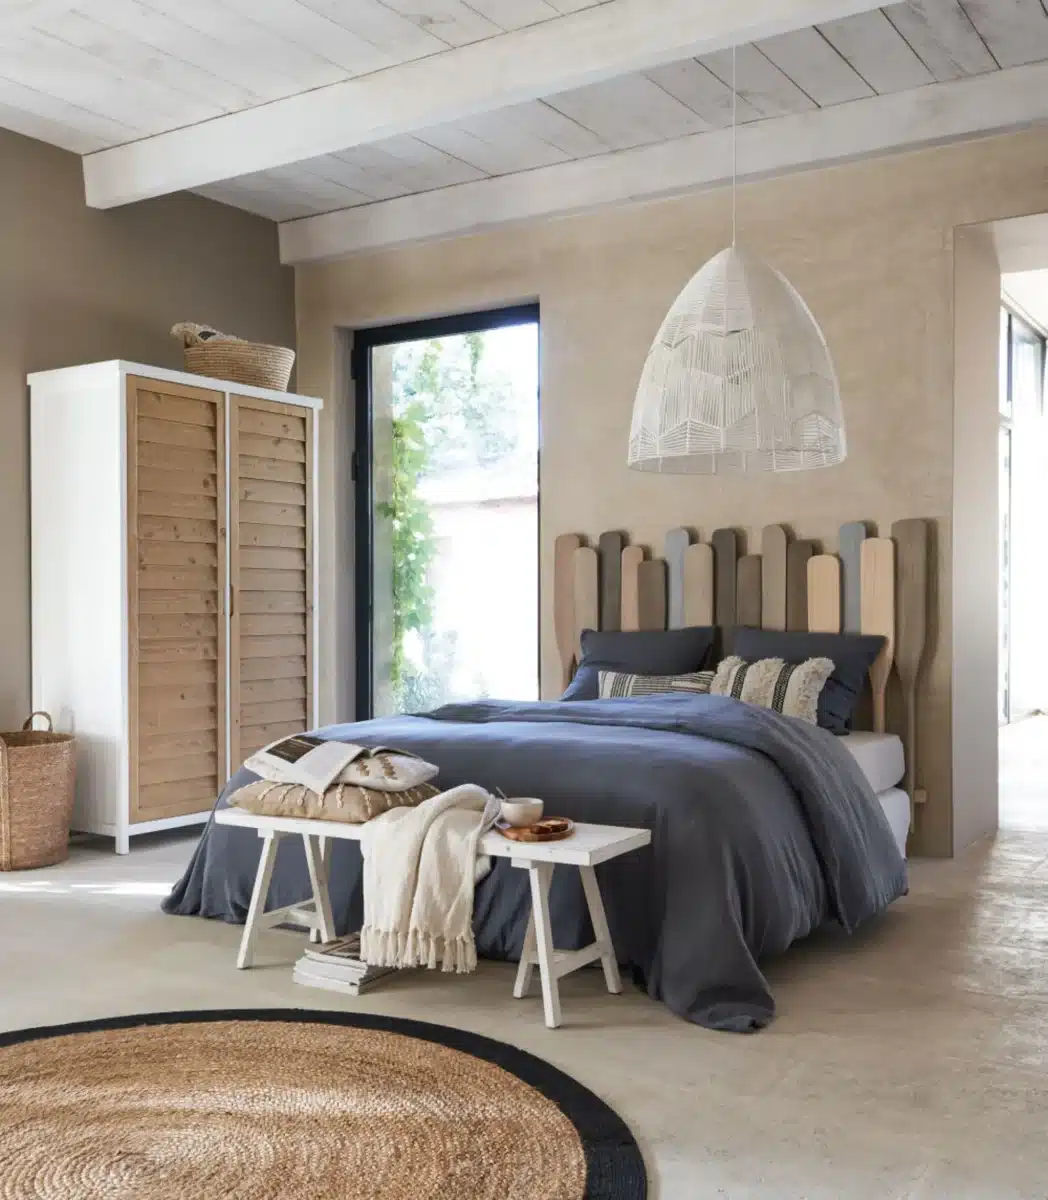 Chambre design avec une tete de lit paddle pour une ambiance bord de mer modernisee